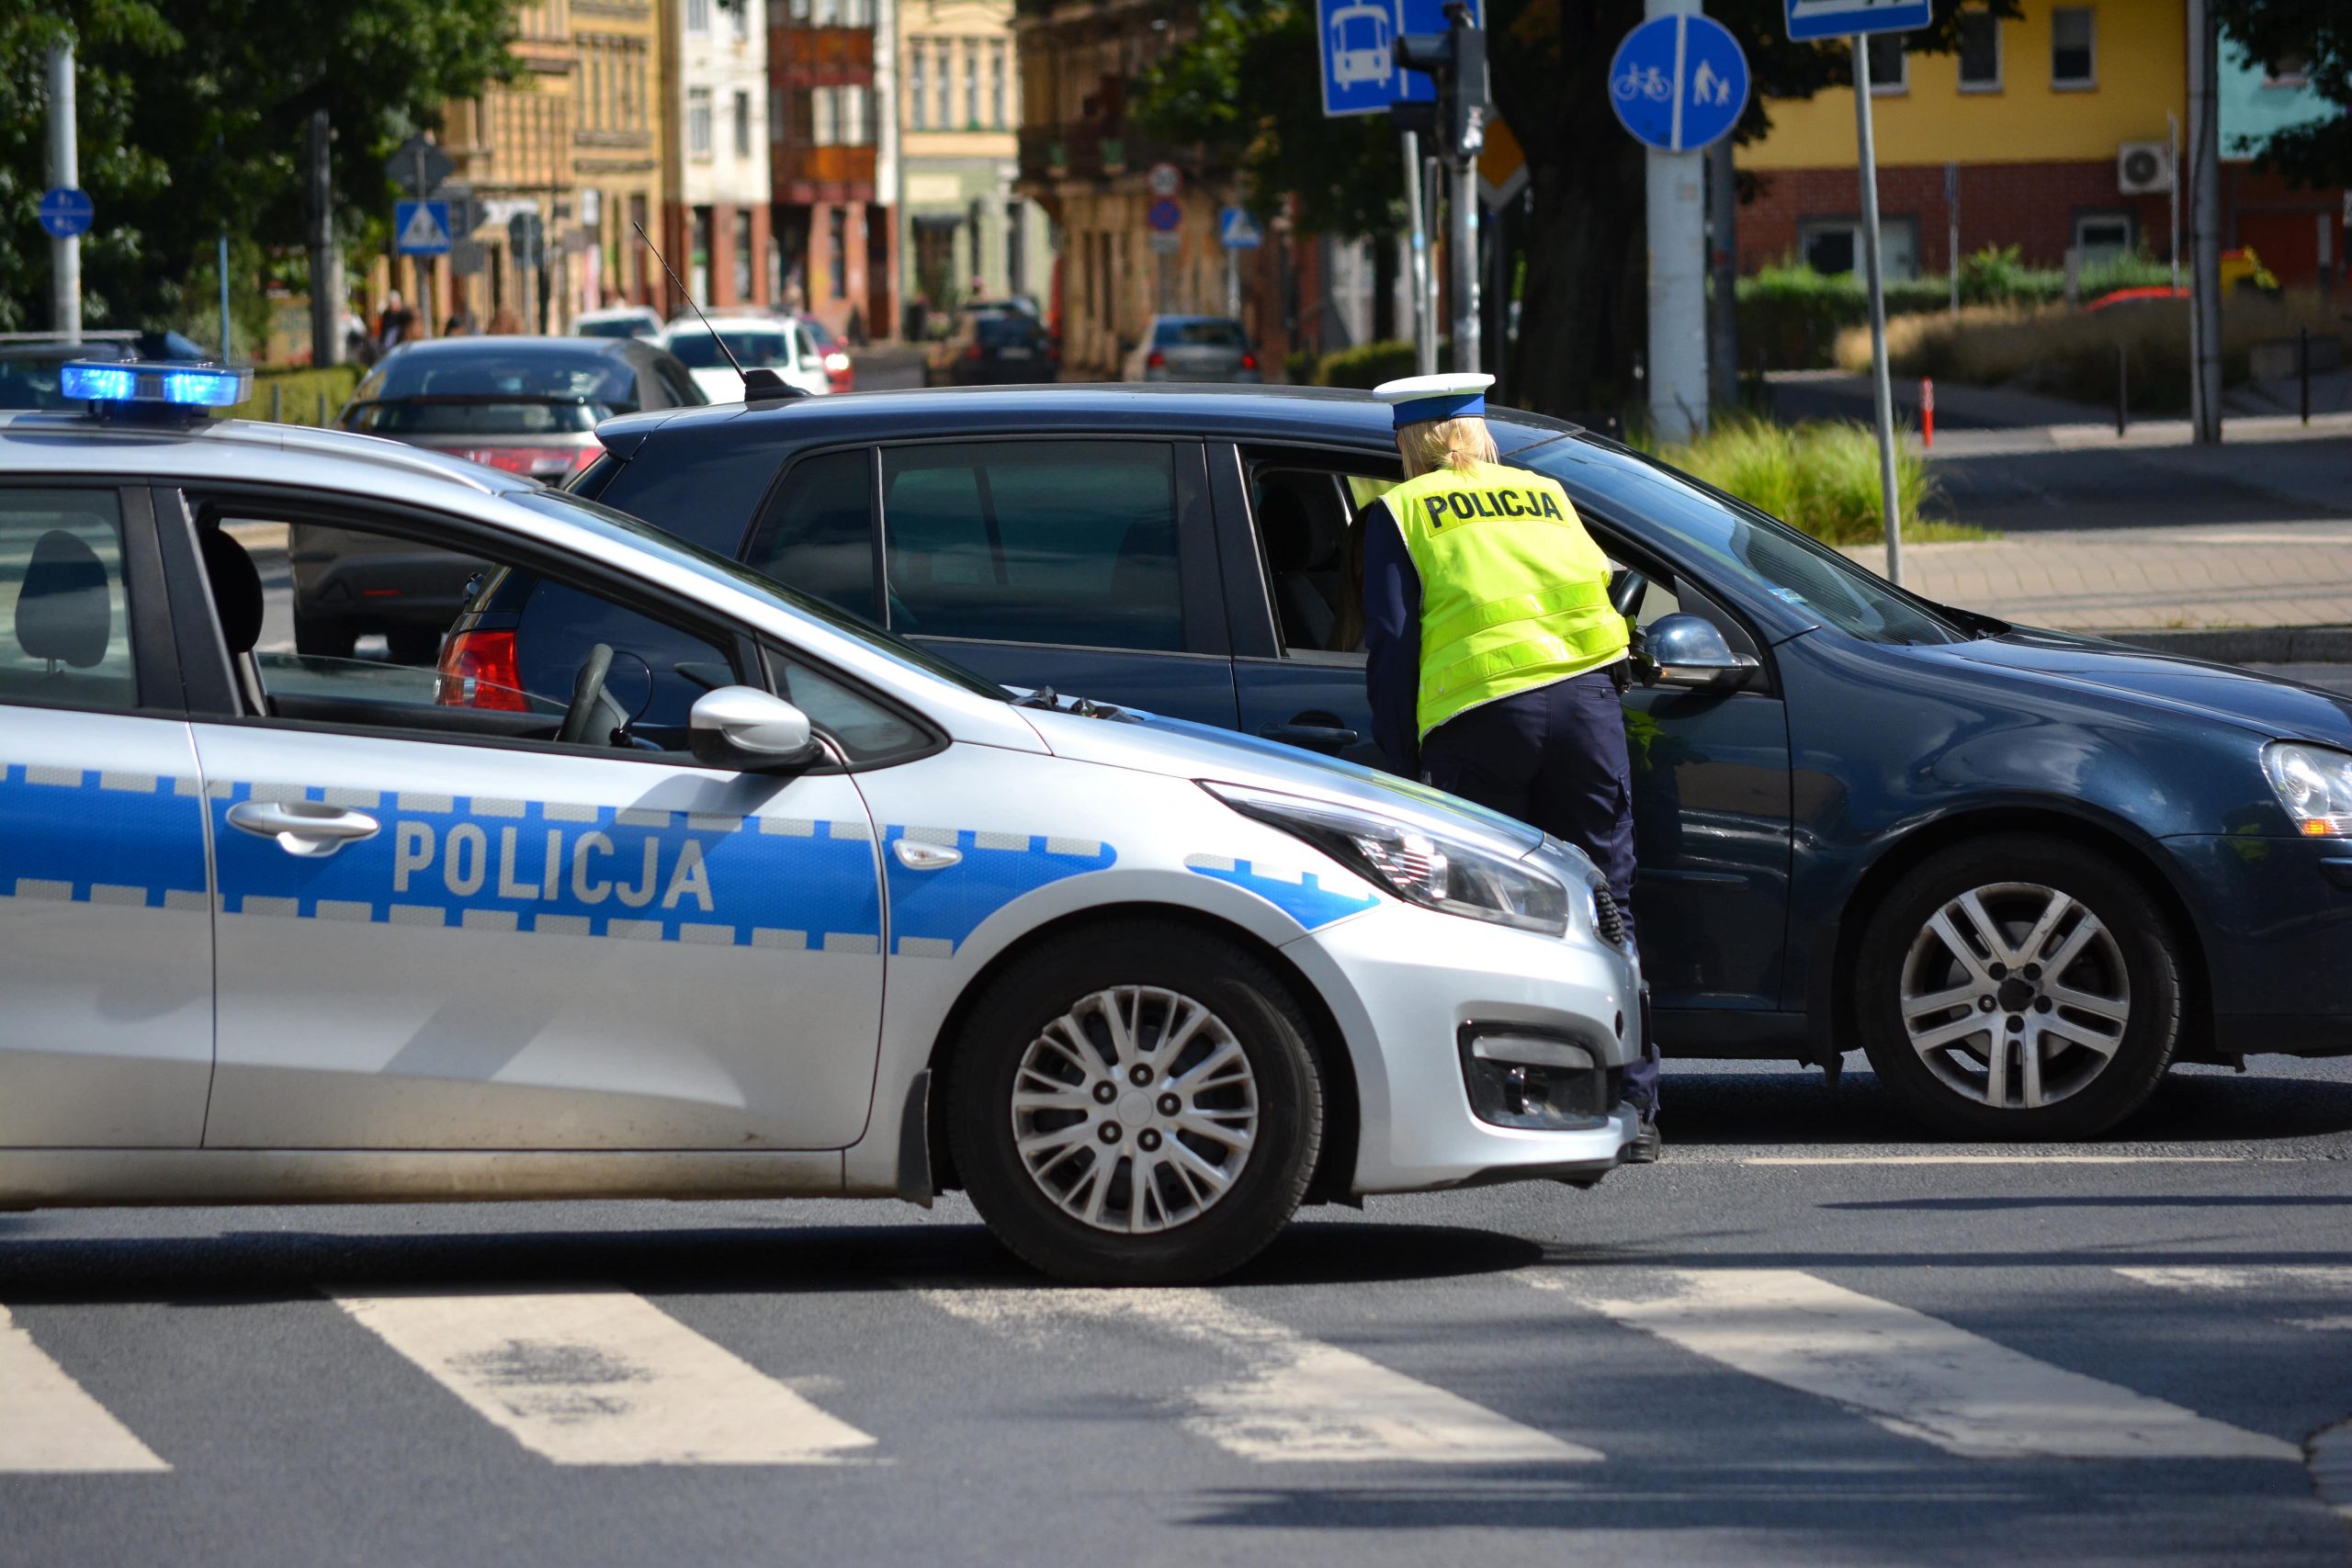 policja, kontrola, samochód, fot. DarSzach, Shutterstock